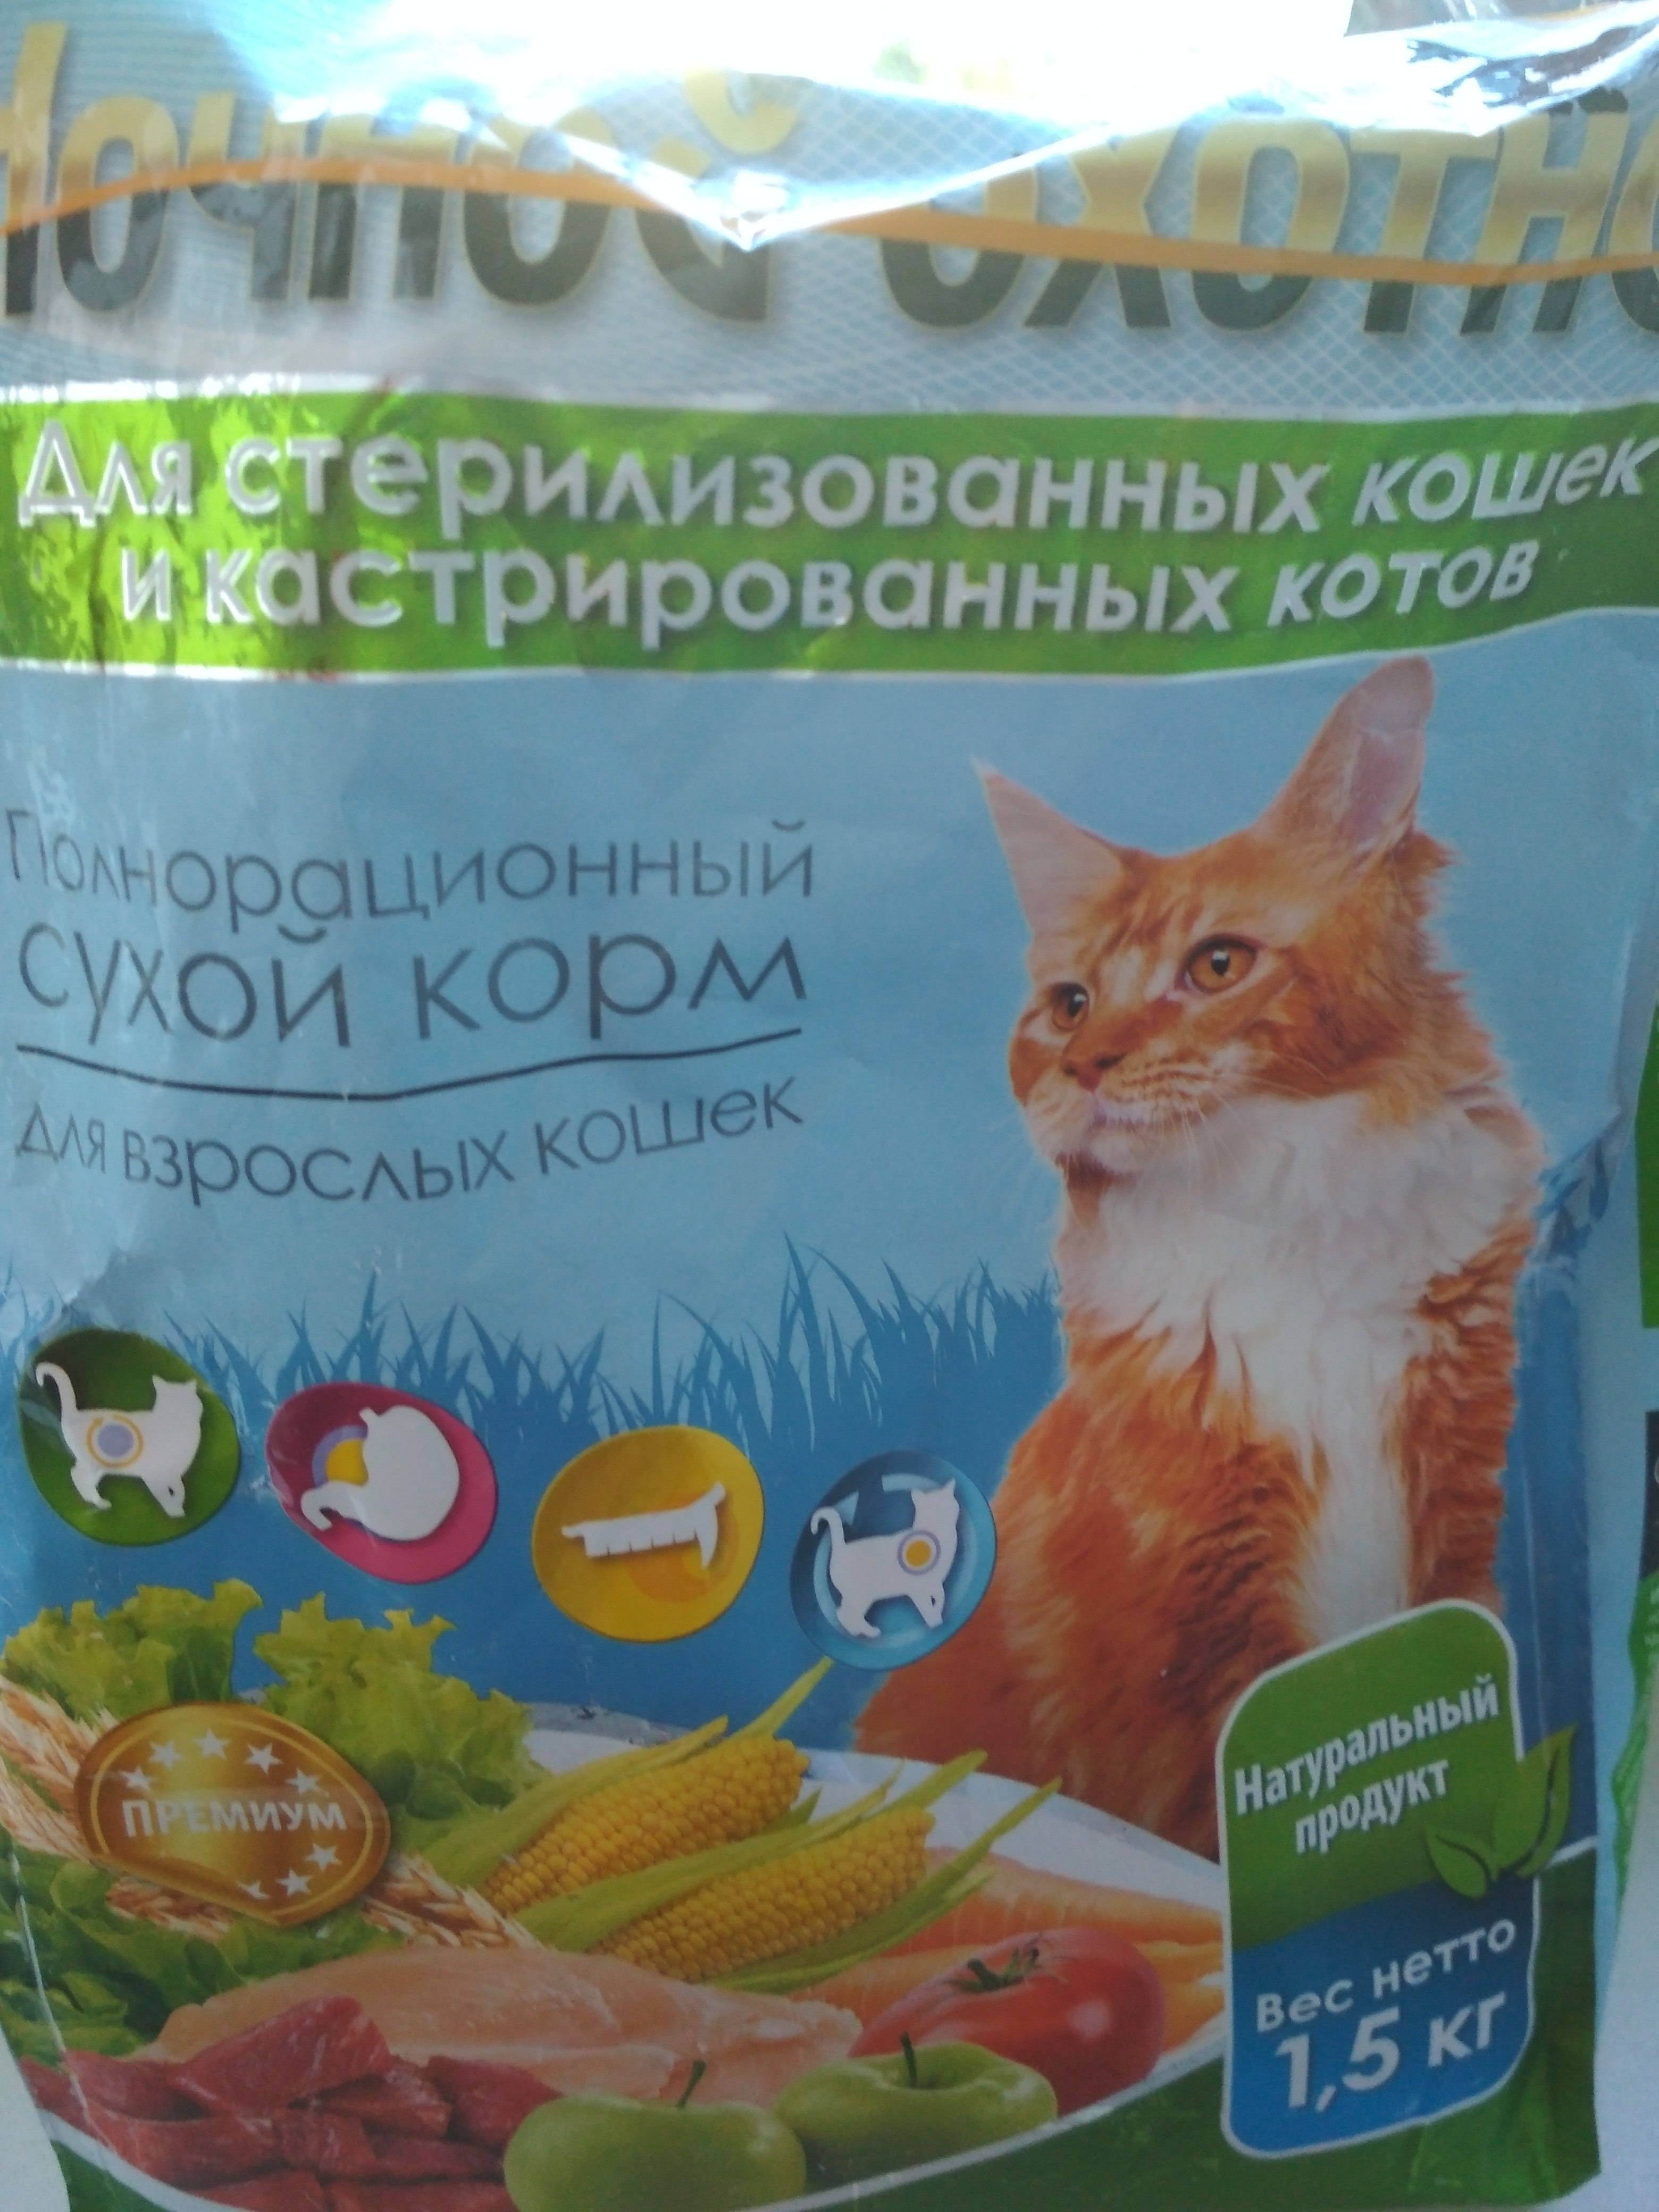 Корм проплан для кошек: характеристика корма и отзывы ветеринаров